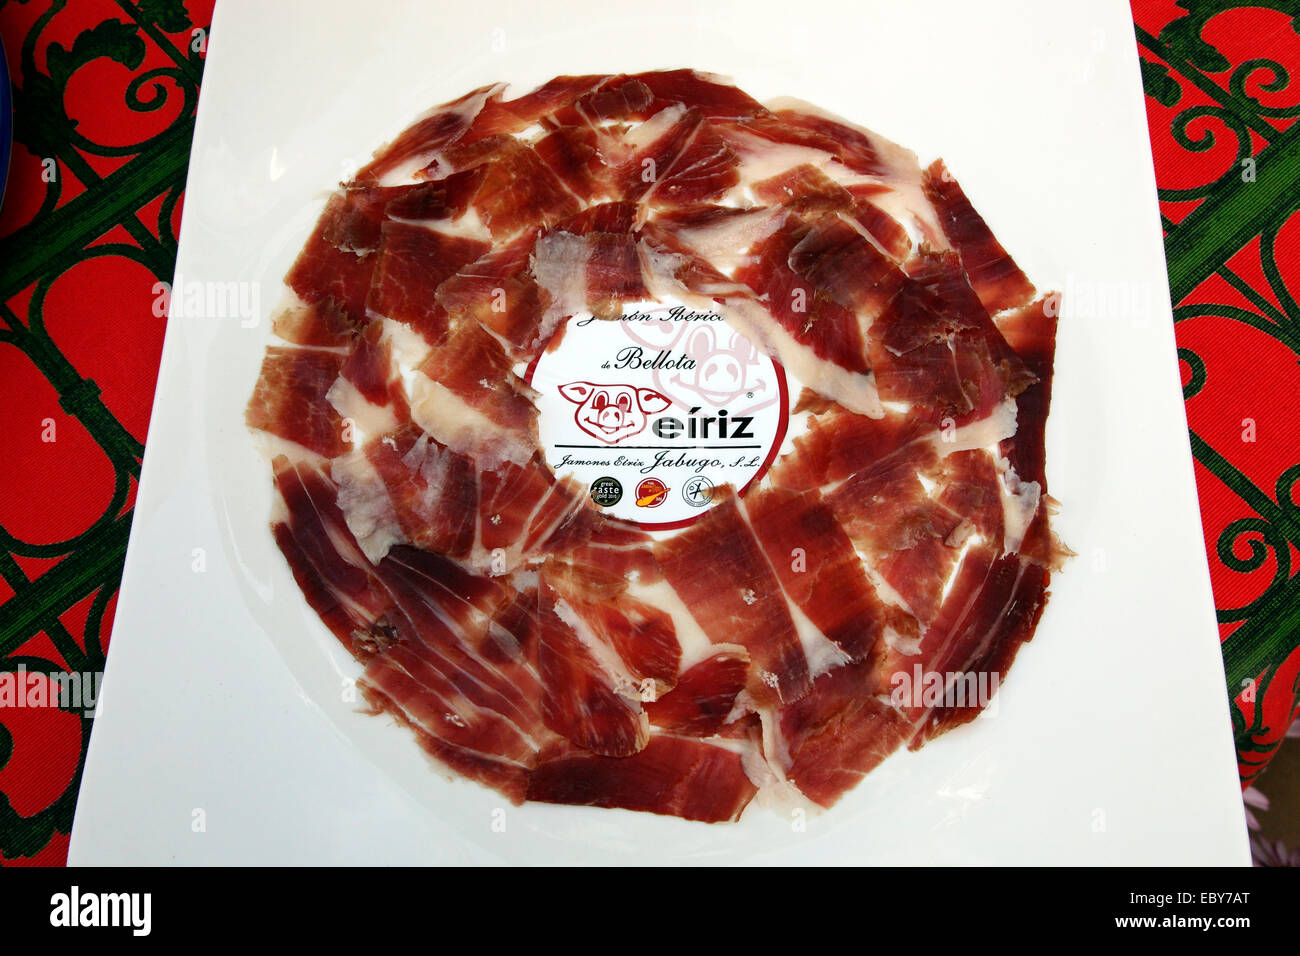 Gourmet Spanish ham, Jambon Iberico Stock Photo